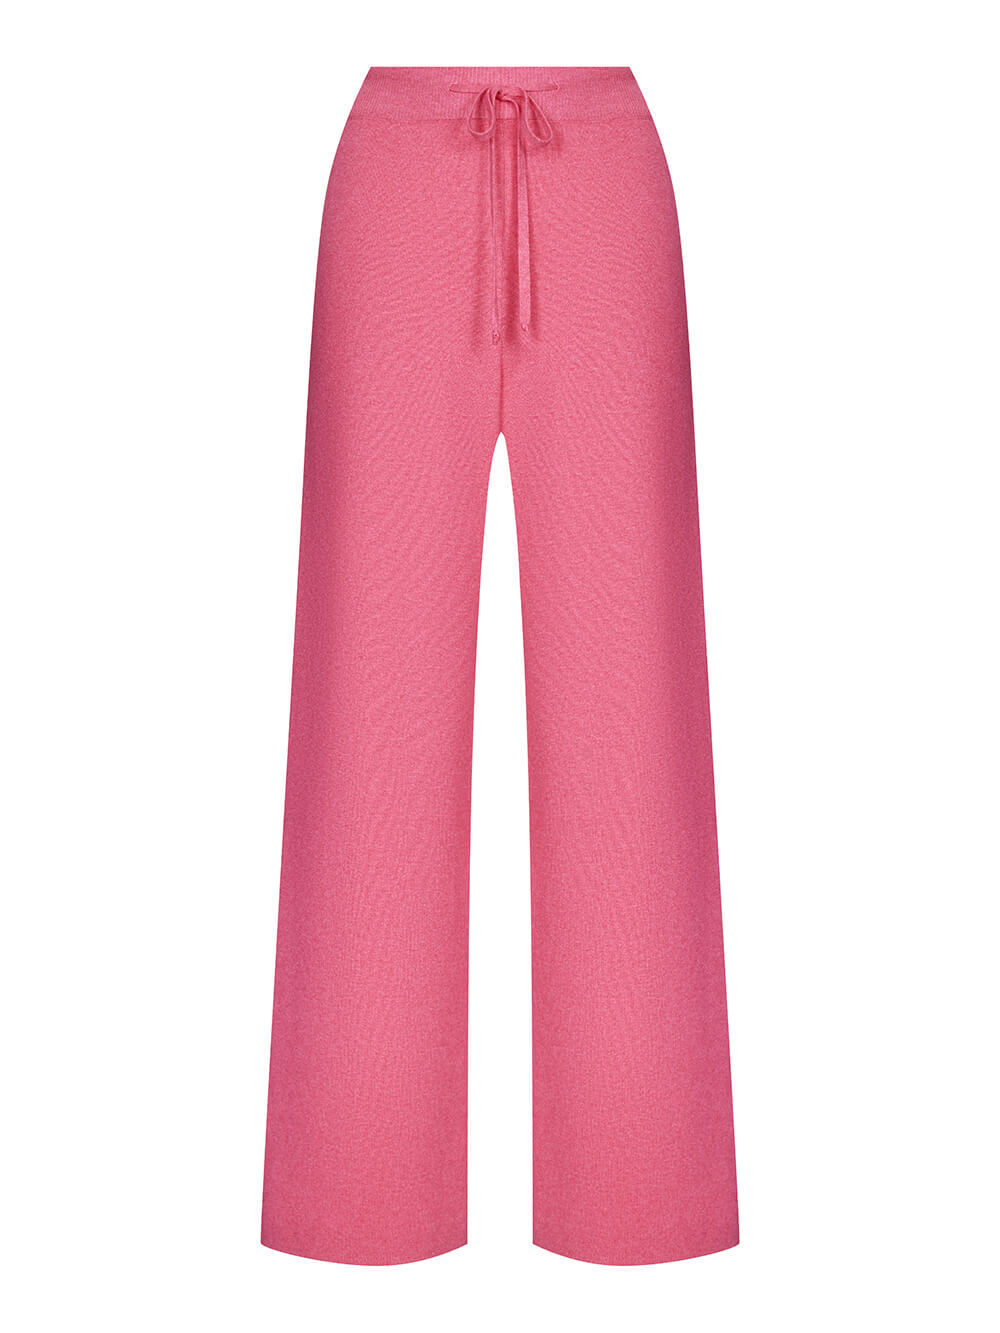 Женские брюки розового цвета из вискозы